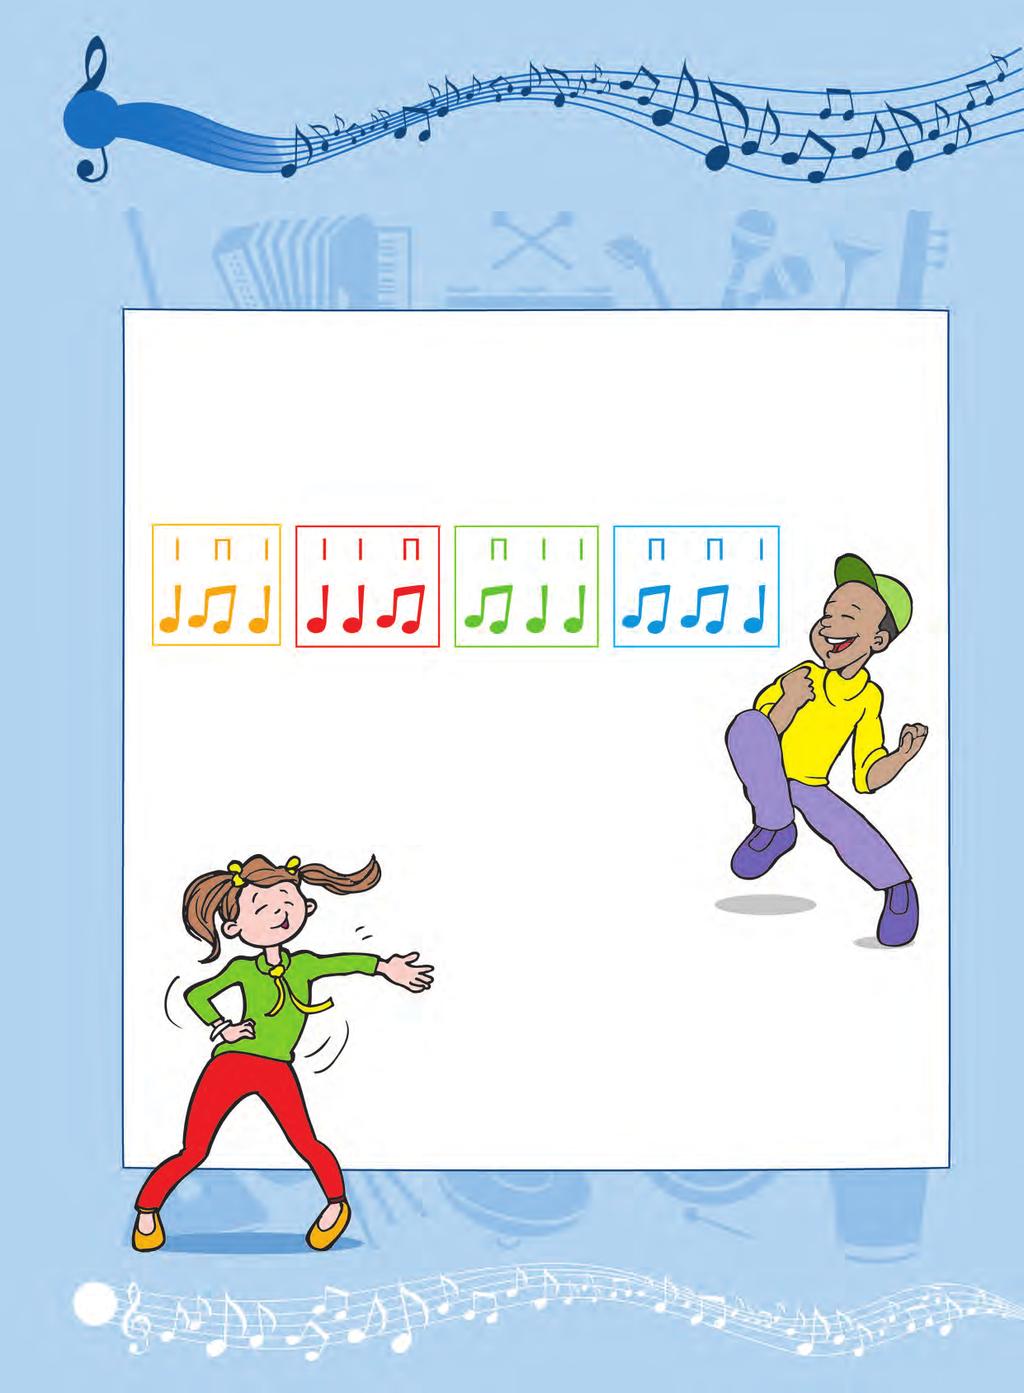 10 Έλα να χορέψουμε βαλς Ρυθμός στα 3! Χωριστείτε σε 4 ομάδες: τους κίτρινους, τους κόκκινους, τους πράσινους και τους μπλε. Θα ακούσετε ένα από τα παρακάτω ρυθμικά μοτίβα.